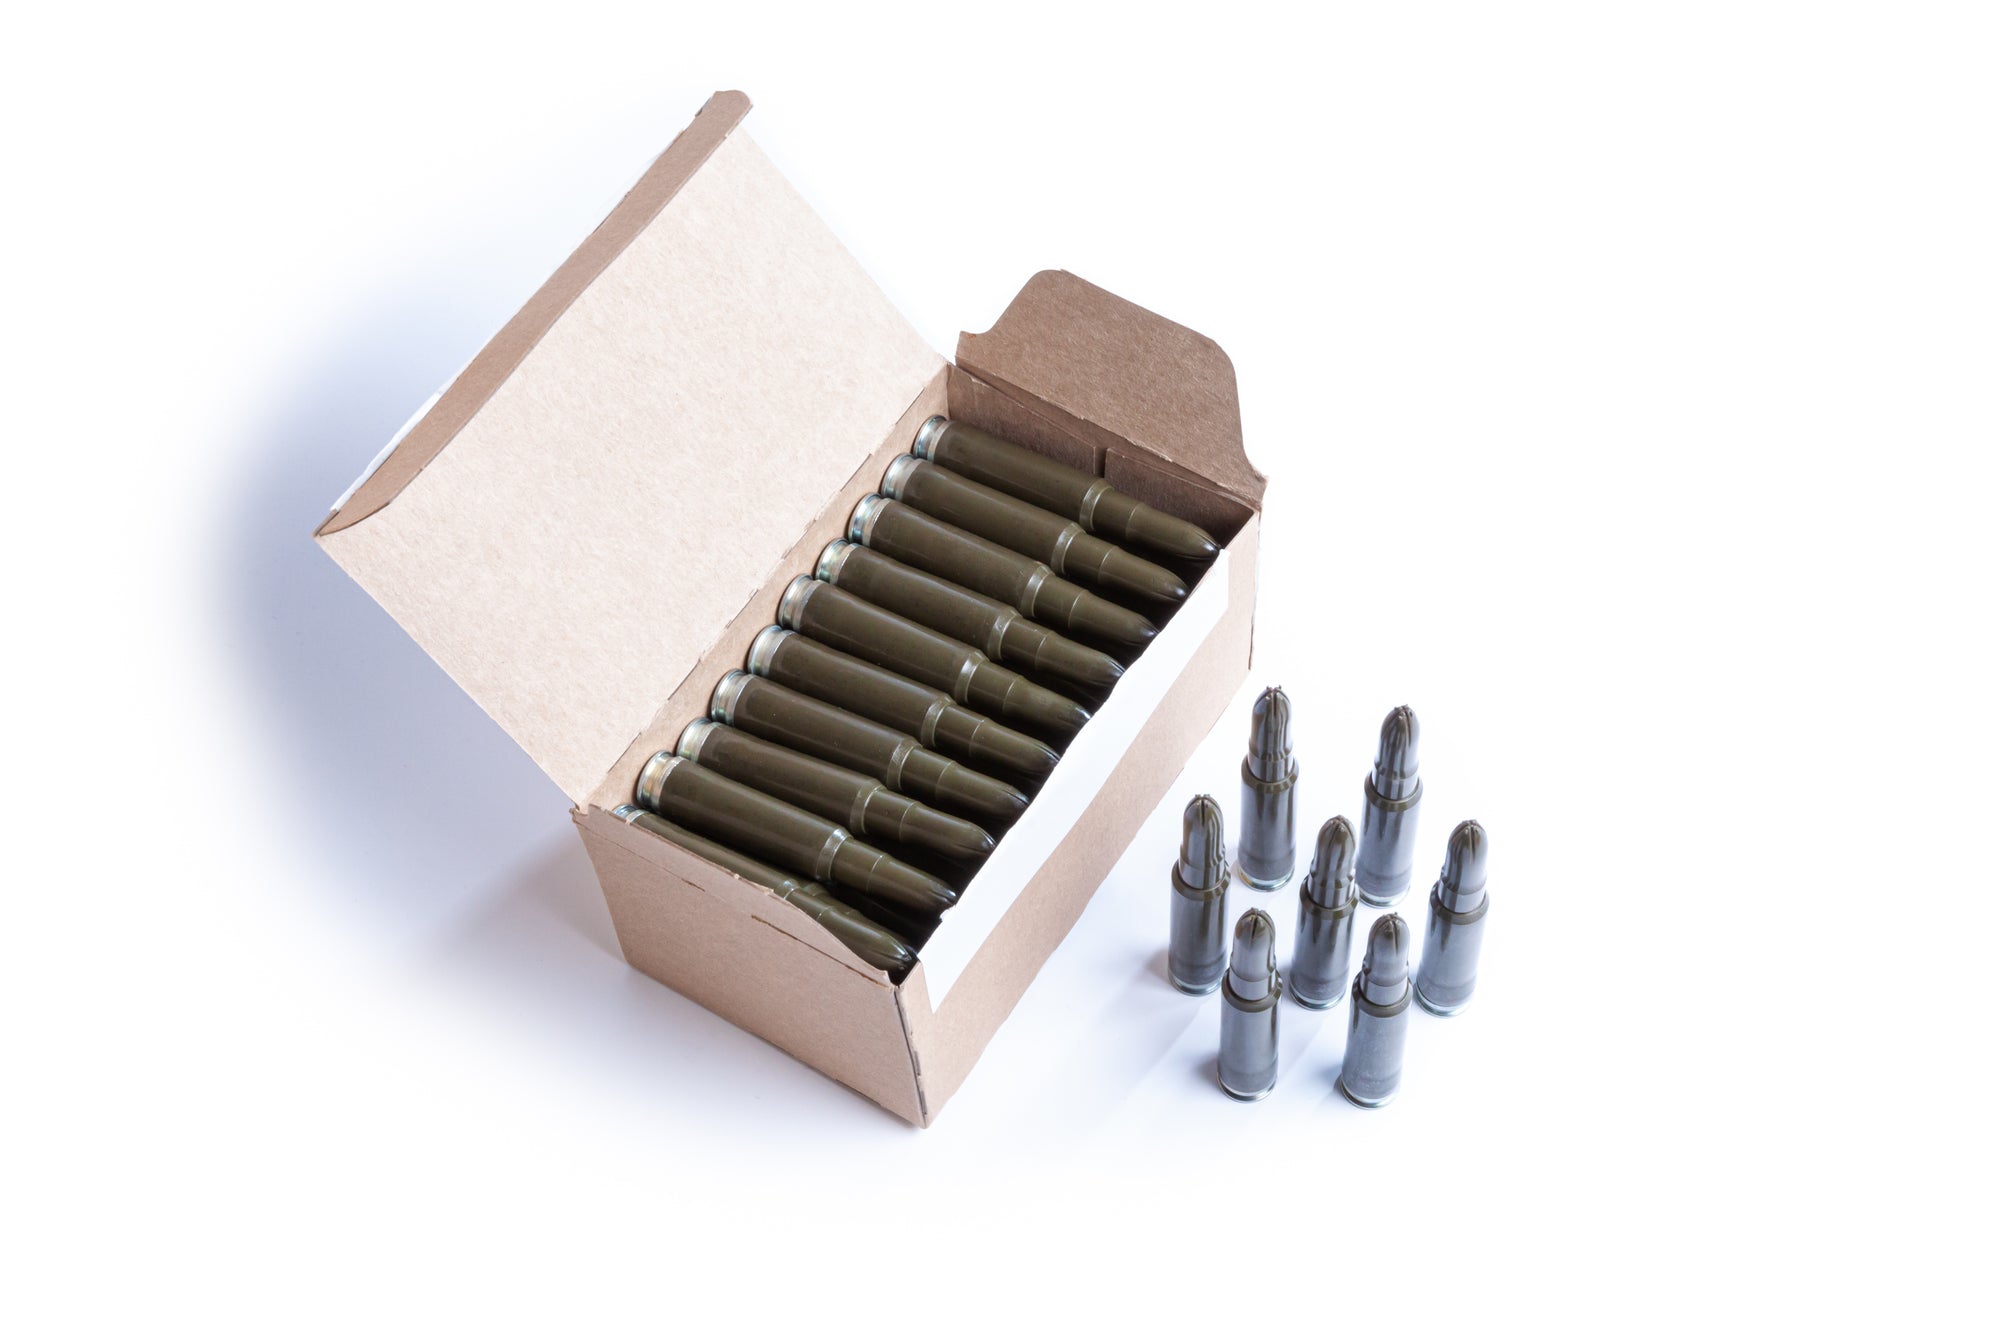 open box of blank 308 cartridges